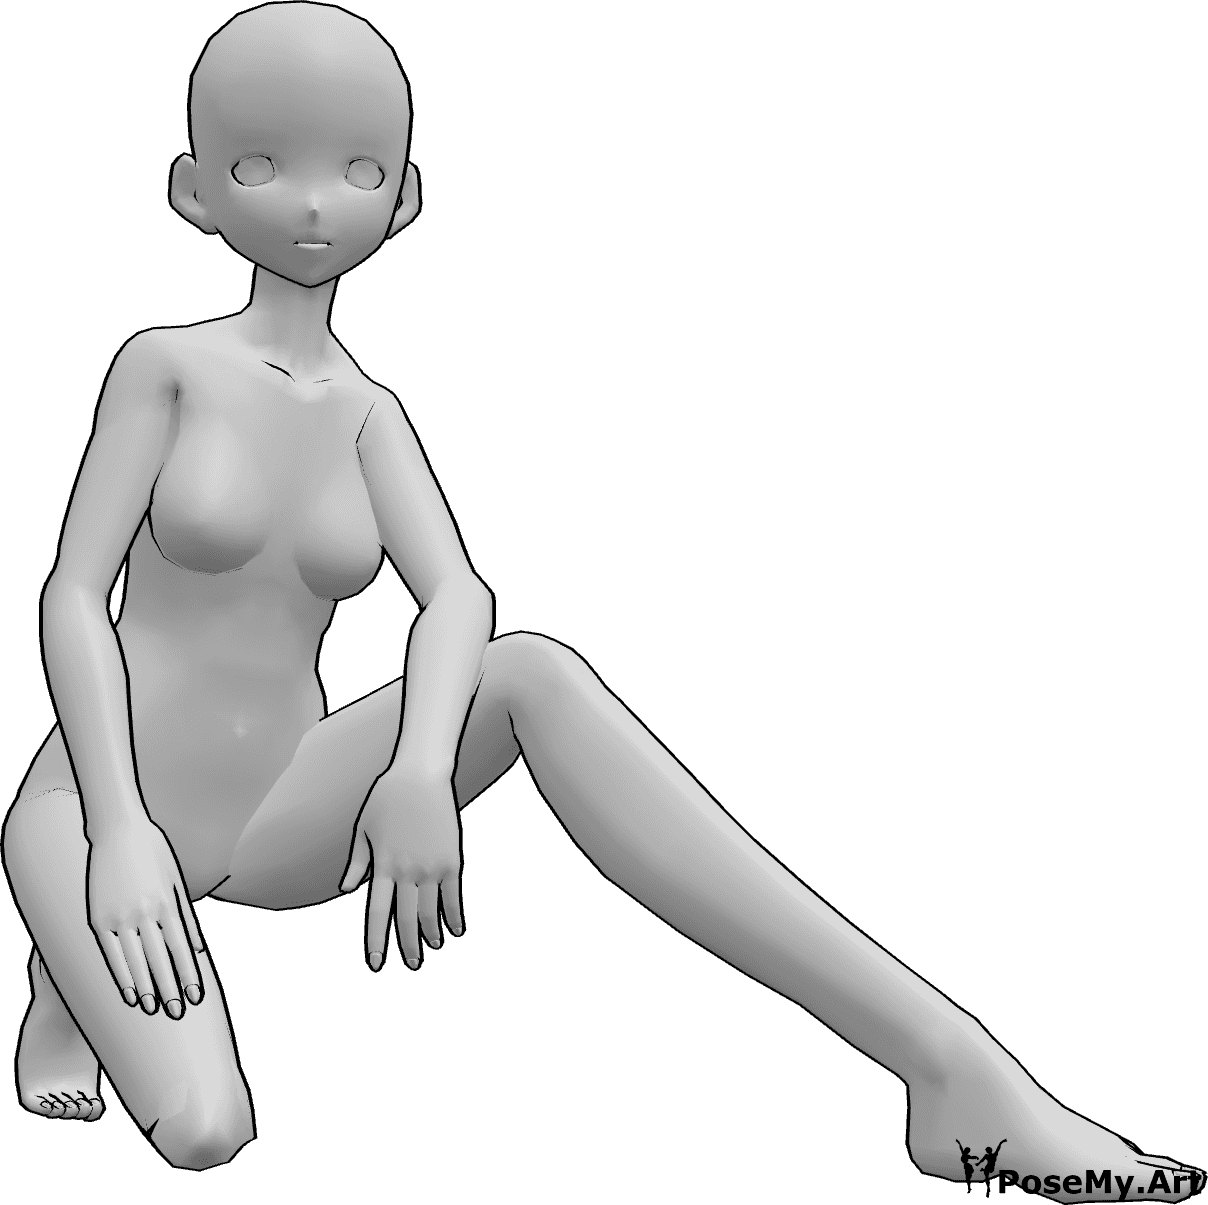 Référence des poses- Femme d'animation agenouillée - L'actrice est agenouillée et prend la pose en s'appuyant sur son genou droit et en posant ses mains sur ses cuisses.